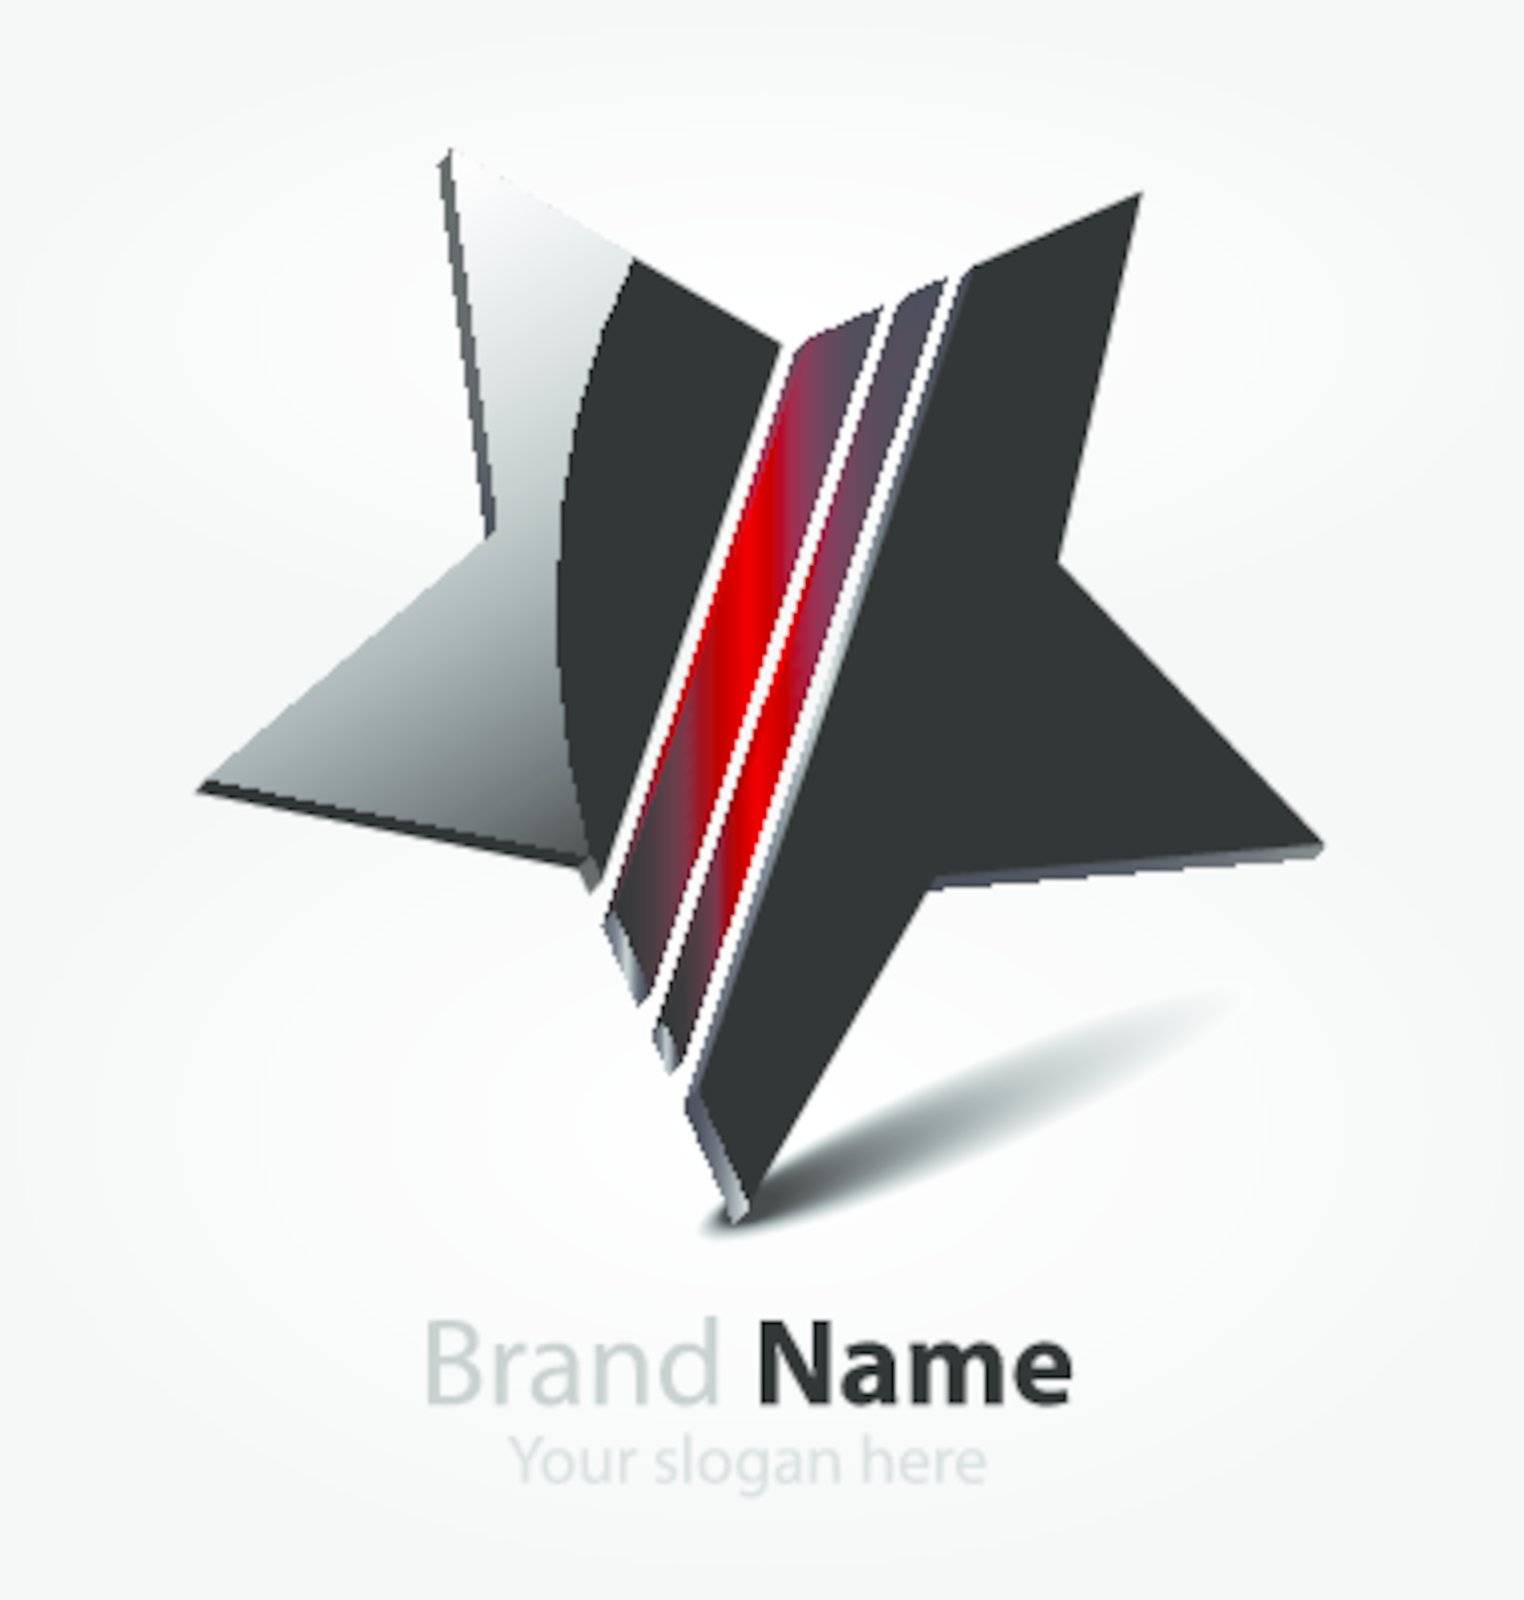 Brand black star logo by Mysteriousman